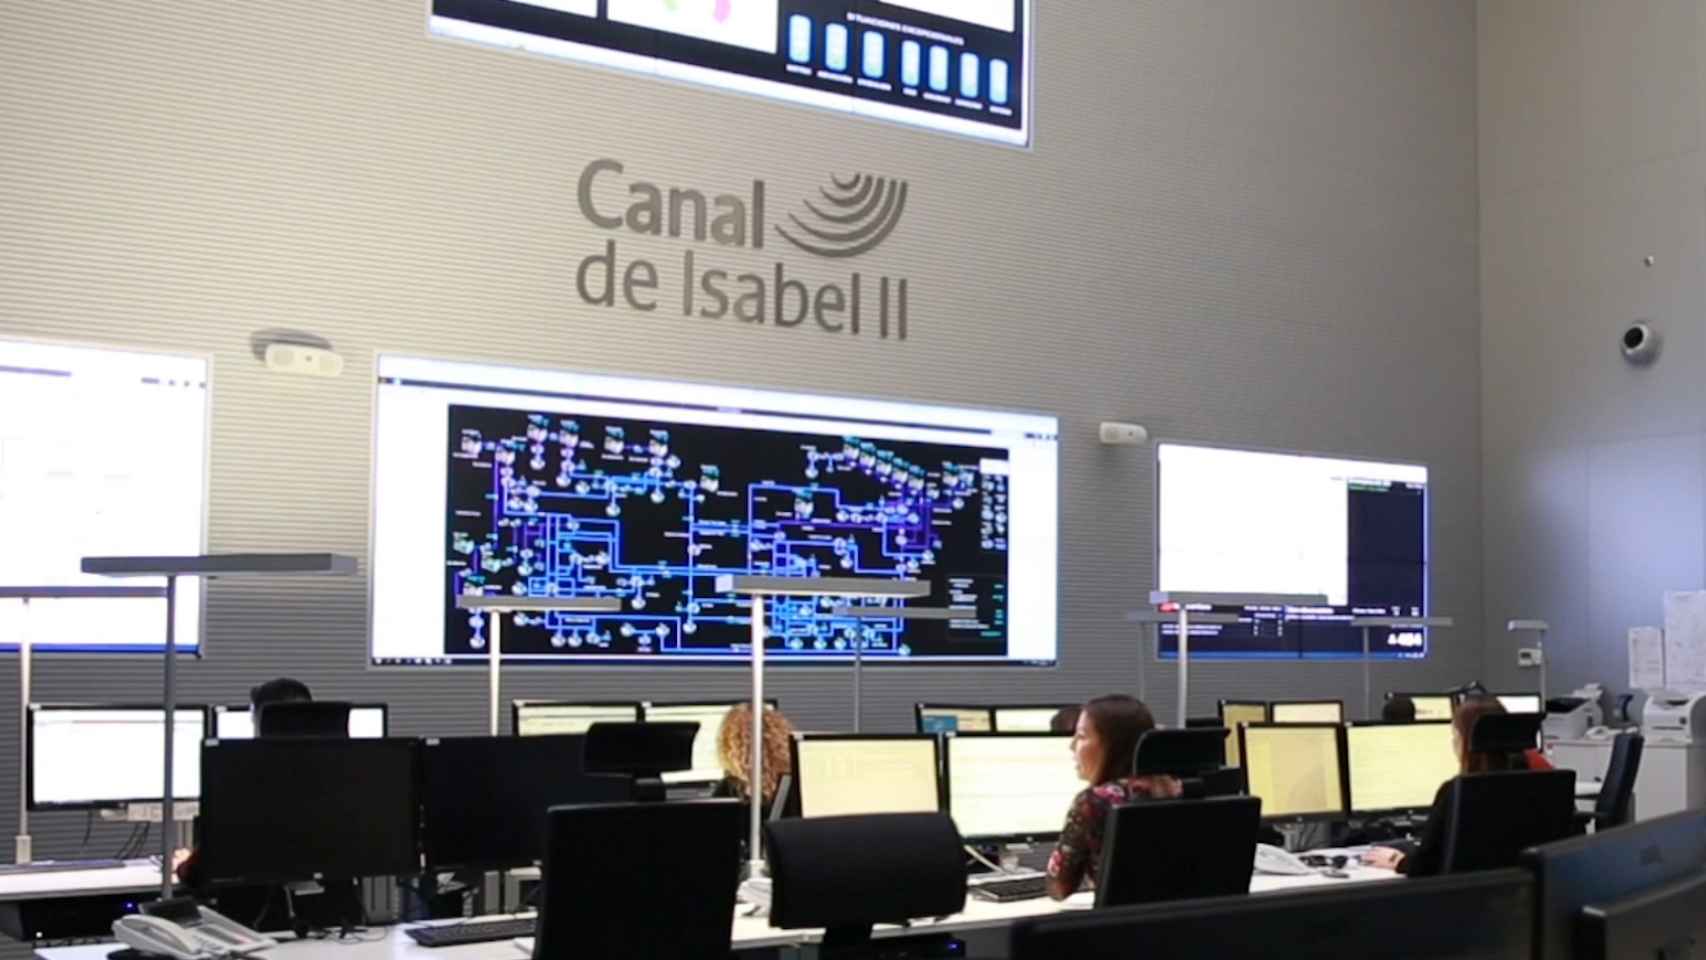 Centro de control del Canal de Isabel II